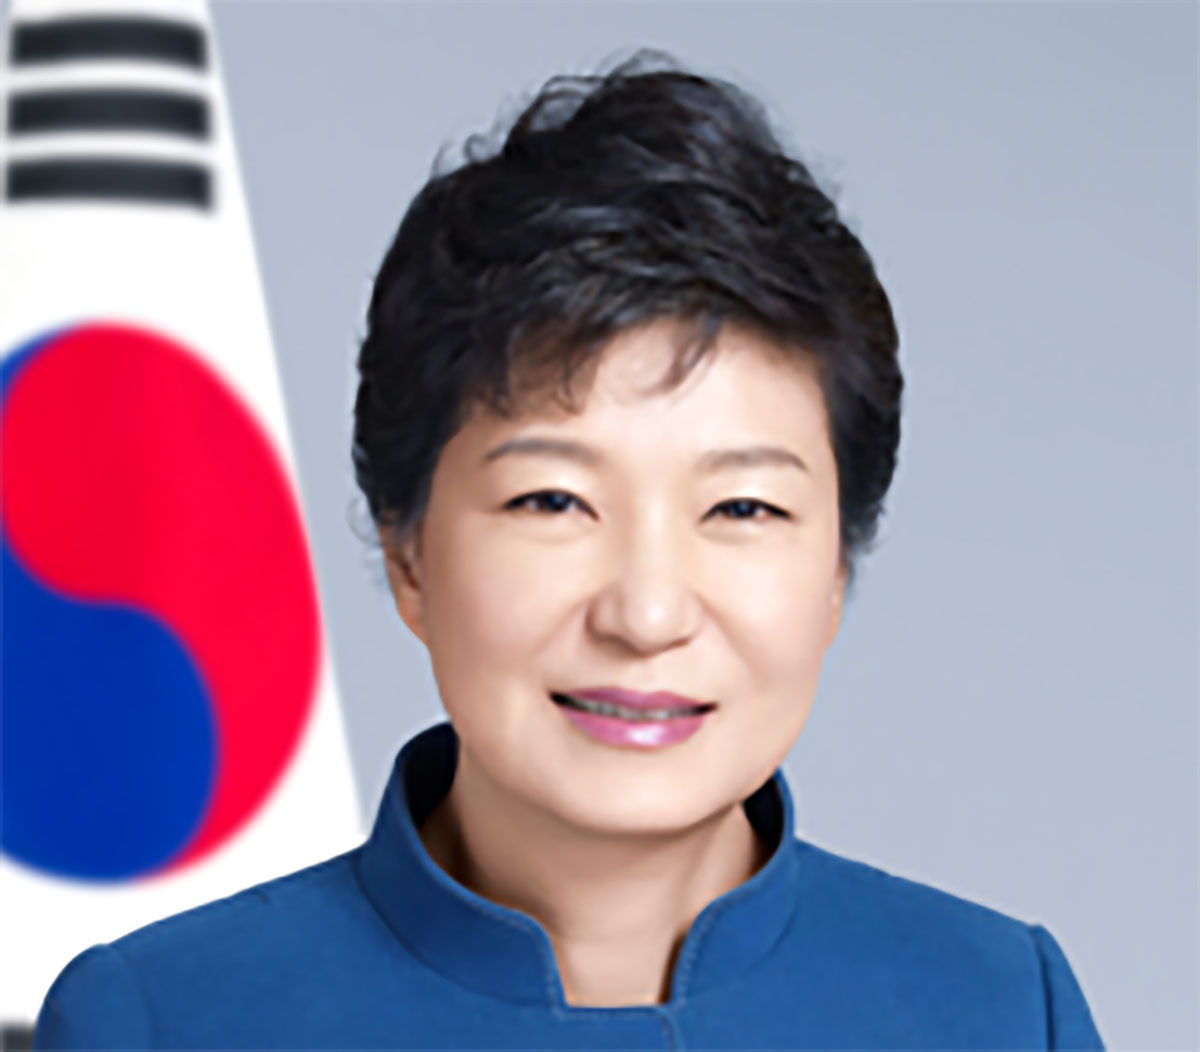 दक्षिण कोरियाली पूर्व राष्ट्रपति पार्क ग्युन-हे कारागार मुक्त